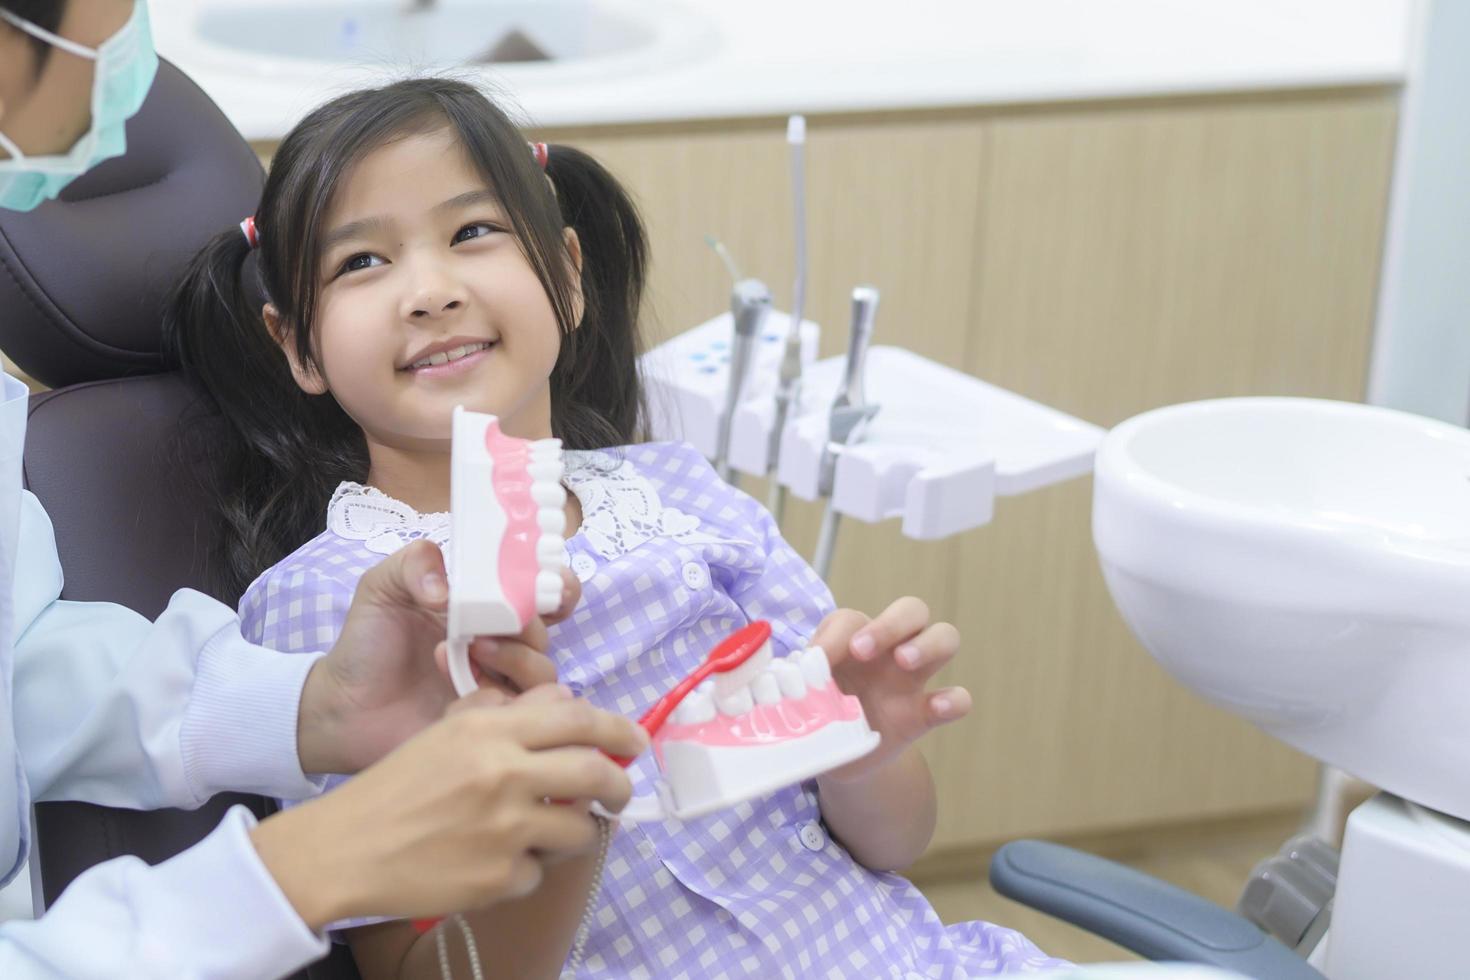 en liten söt flicka som har tänder undersökta av tandläkare på tandklinik, tandkontroll och friska tänder koncept foto